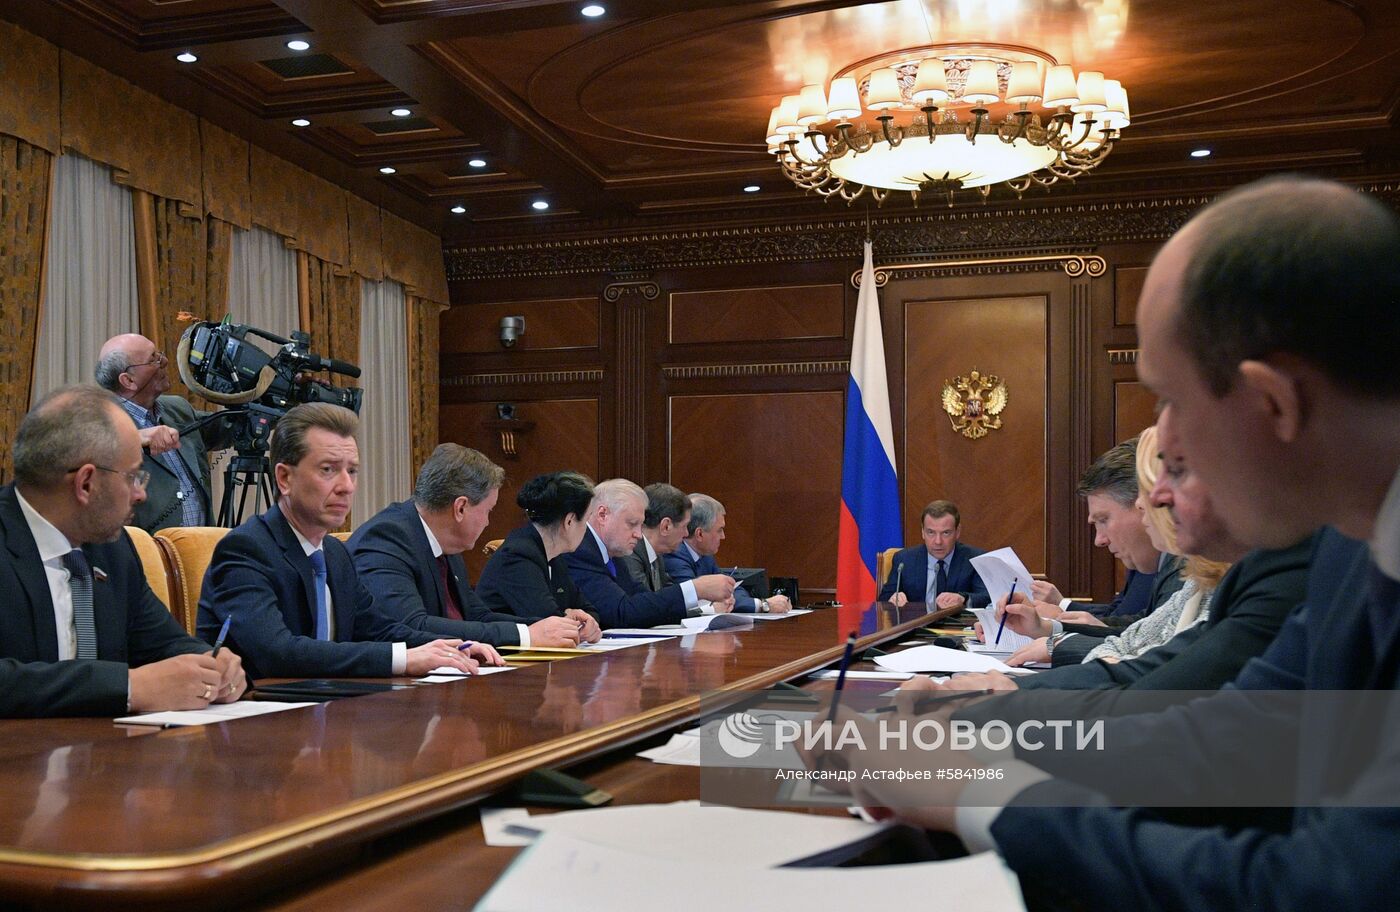 Премьер-министр РФ Д. Медведев провел встречу с руководством фракции партии «Справедливая Россия» в Госдуме РФ